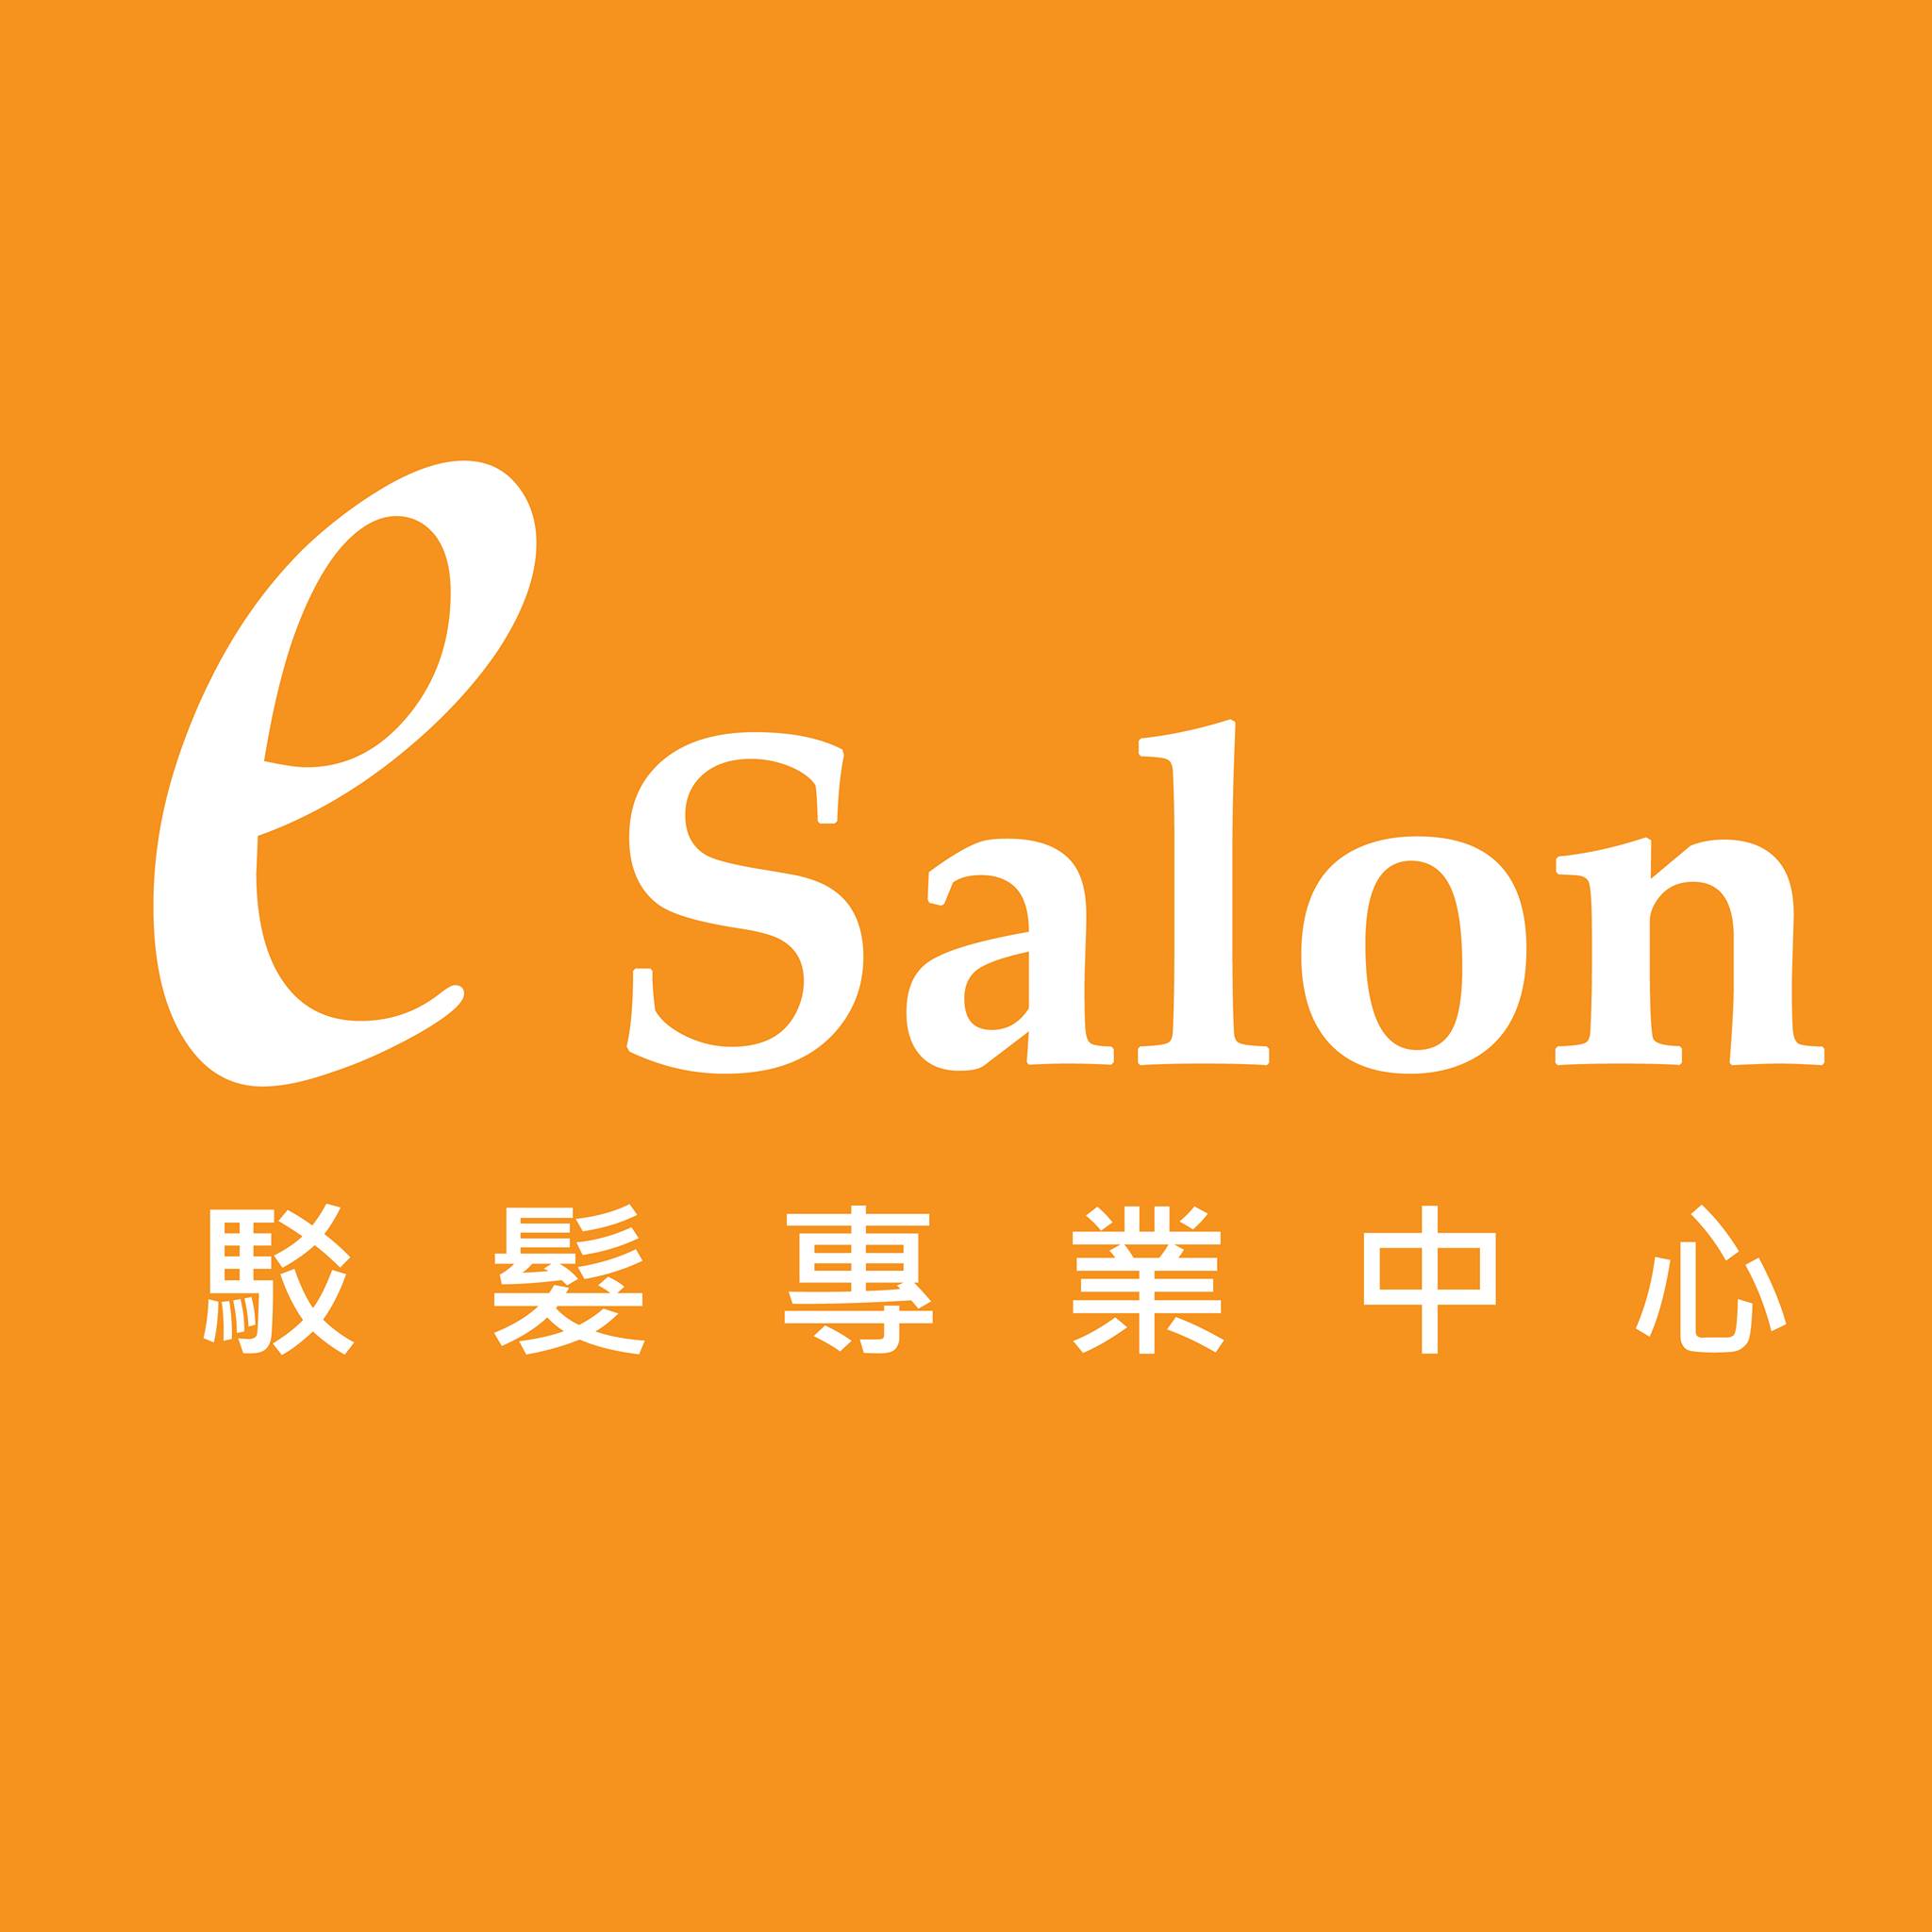 髮型屋: E Salon Station 駁髪專業中心